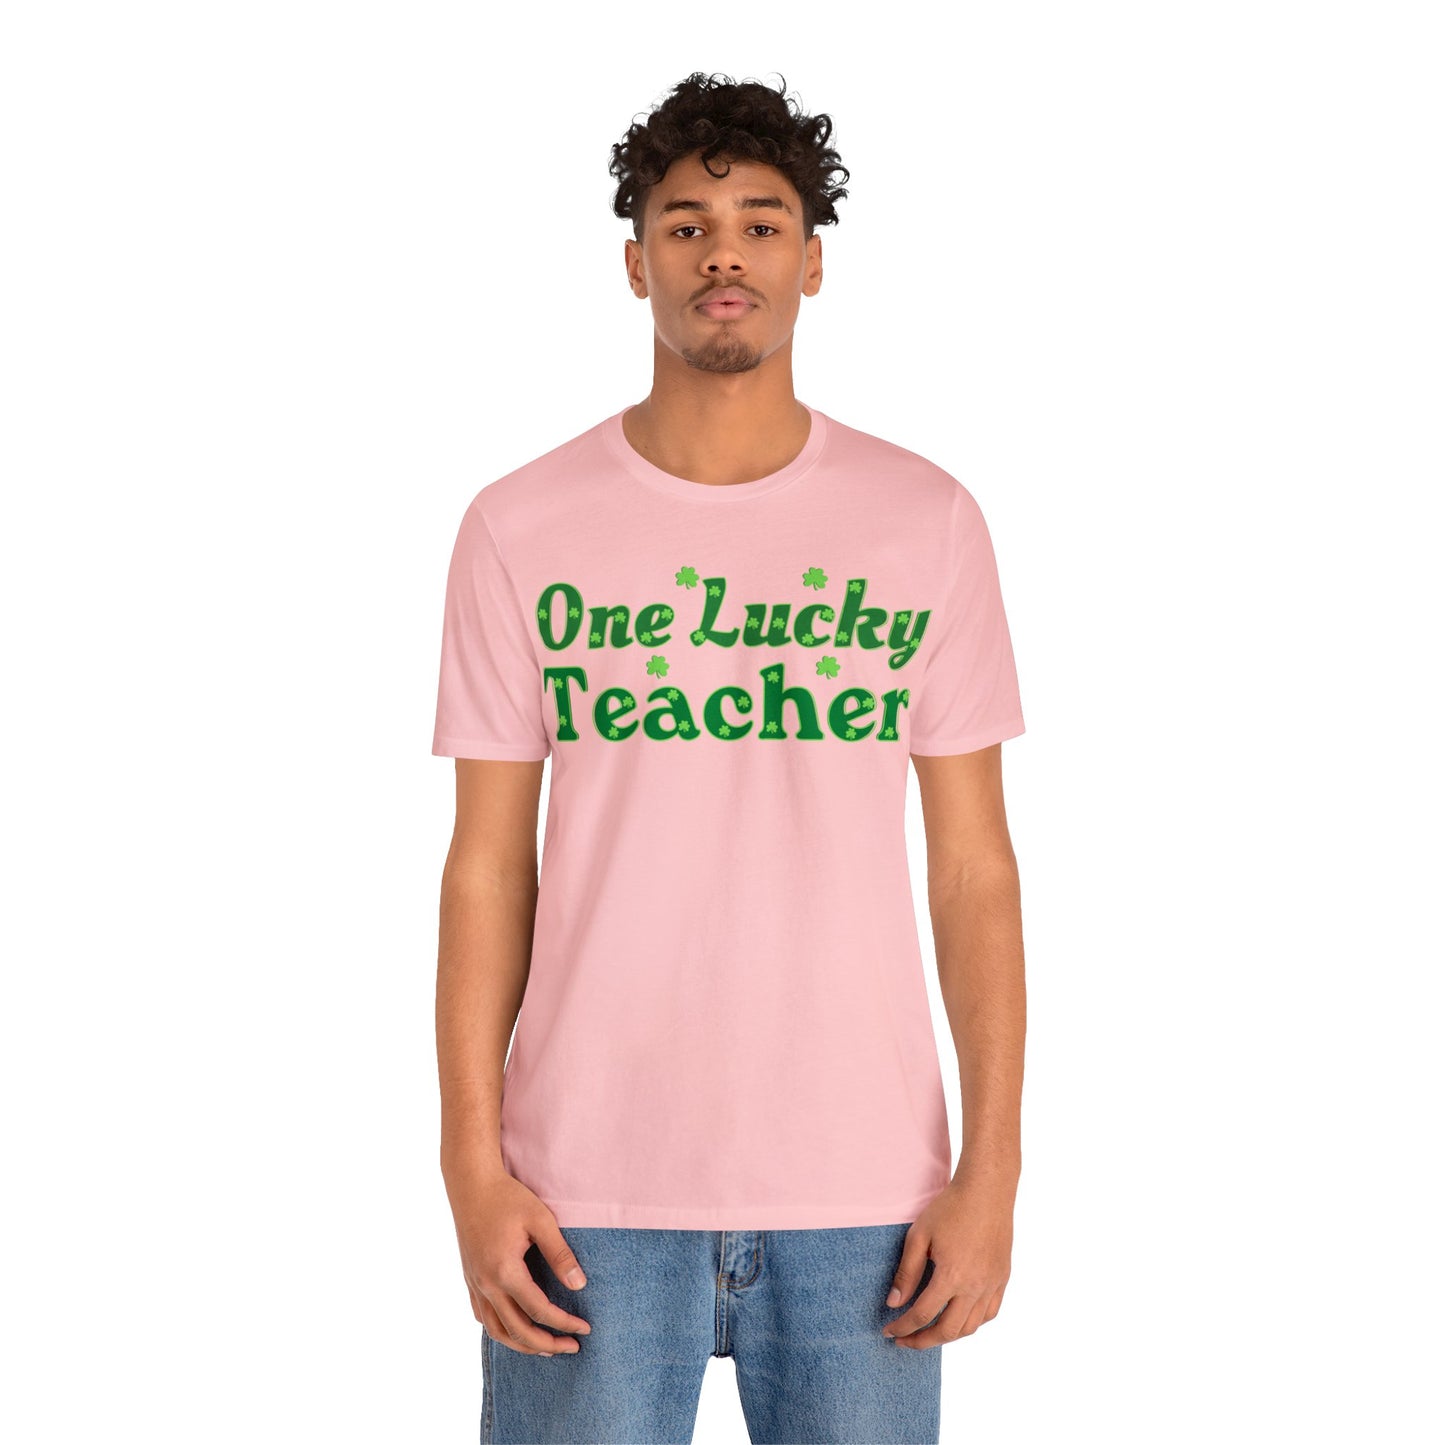 One Lucky Teacher Shirt Feeling Lucky St Patrick's Day shirt